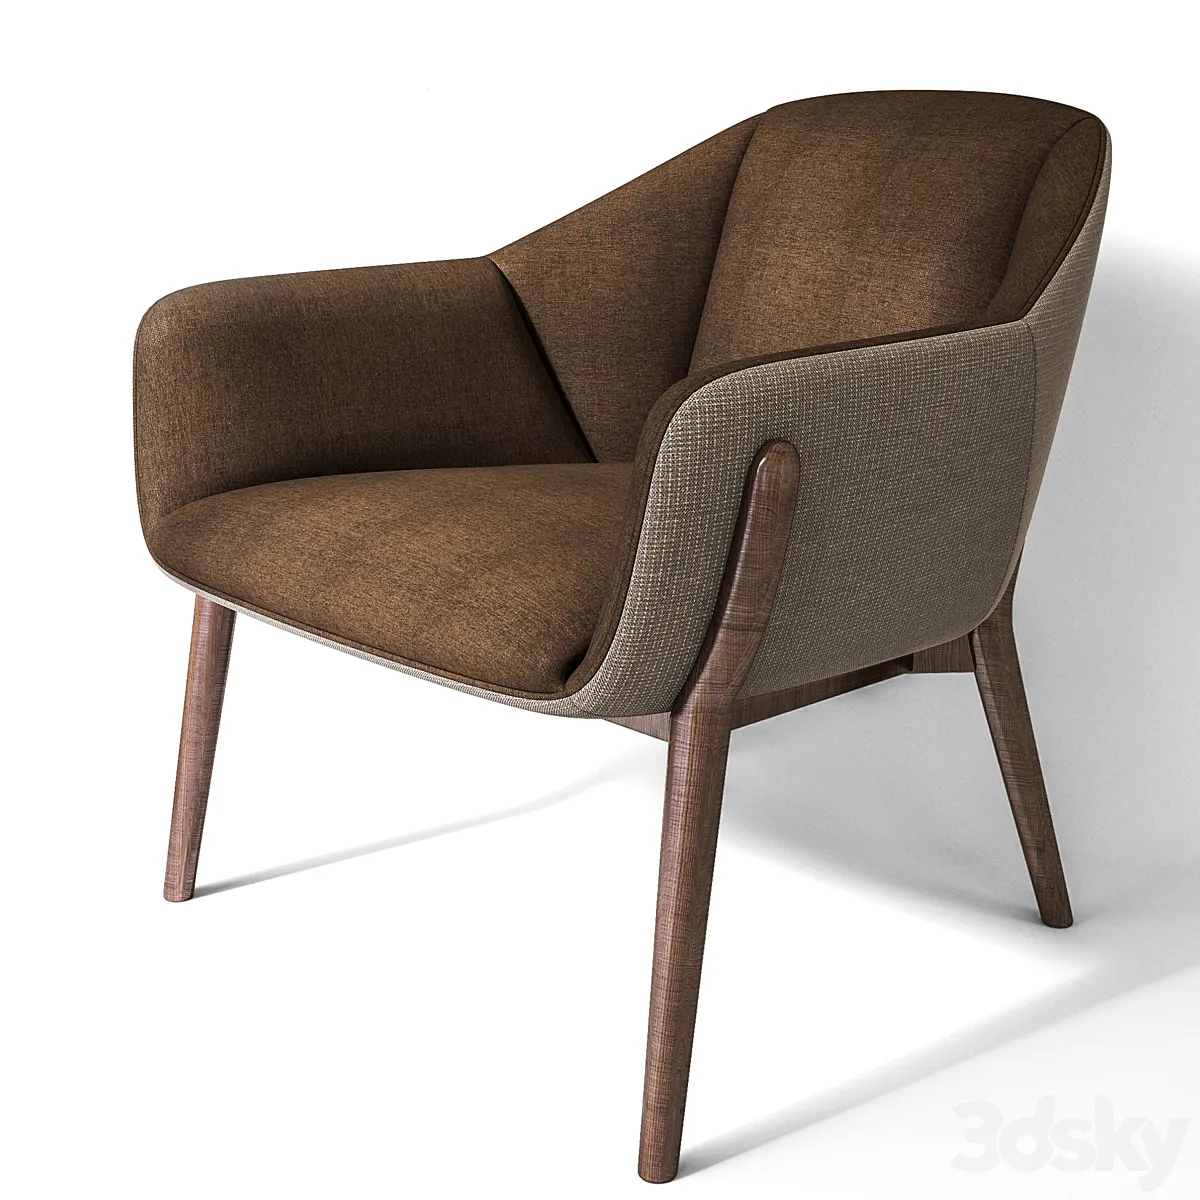 3dsky - NIDO Chair - RAFA GARCIA